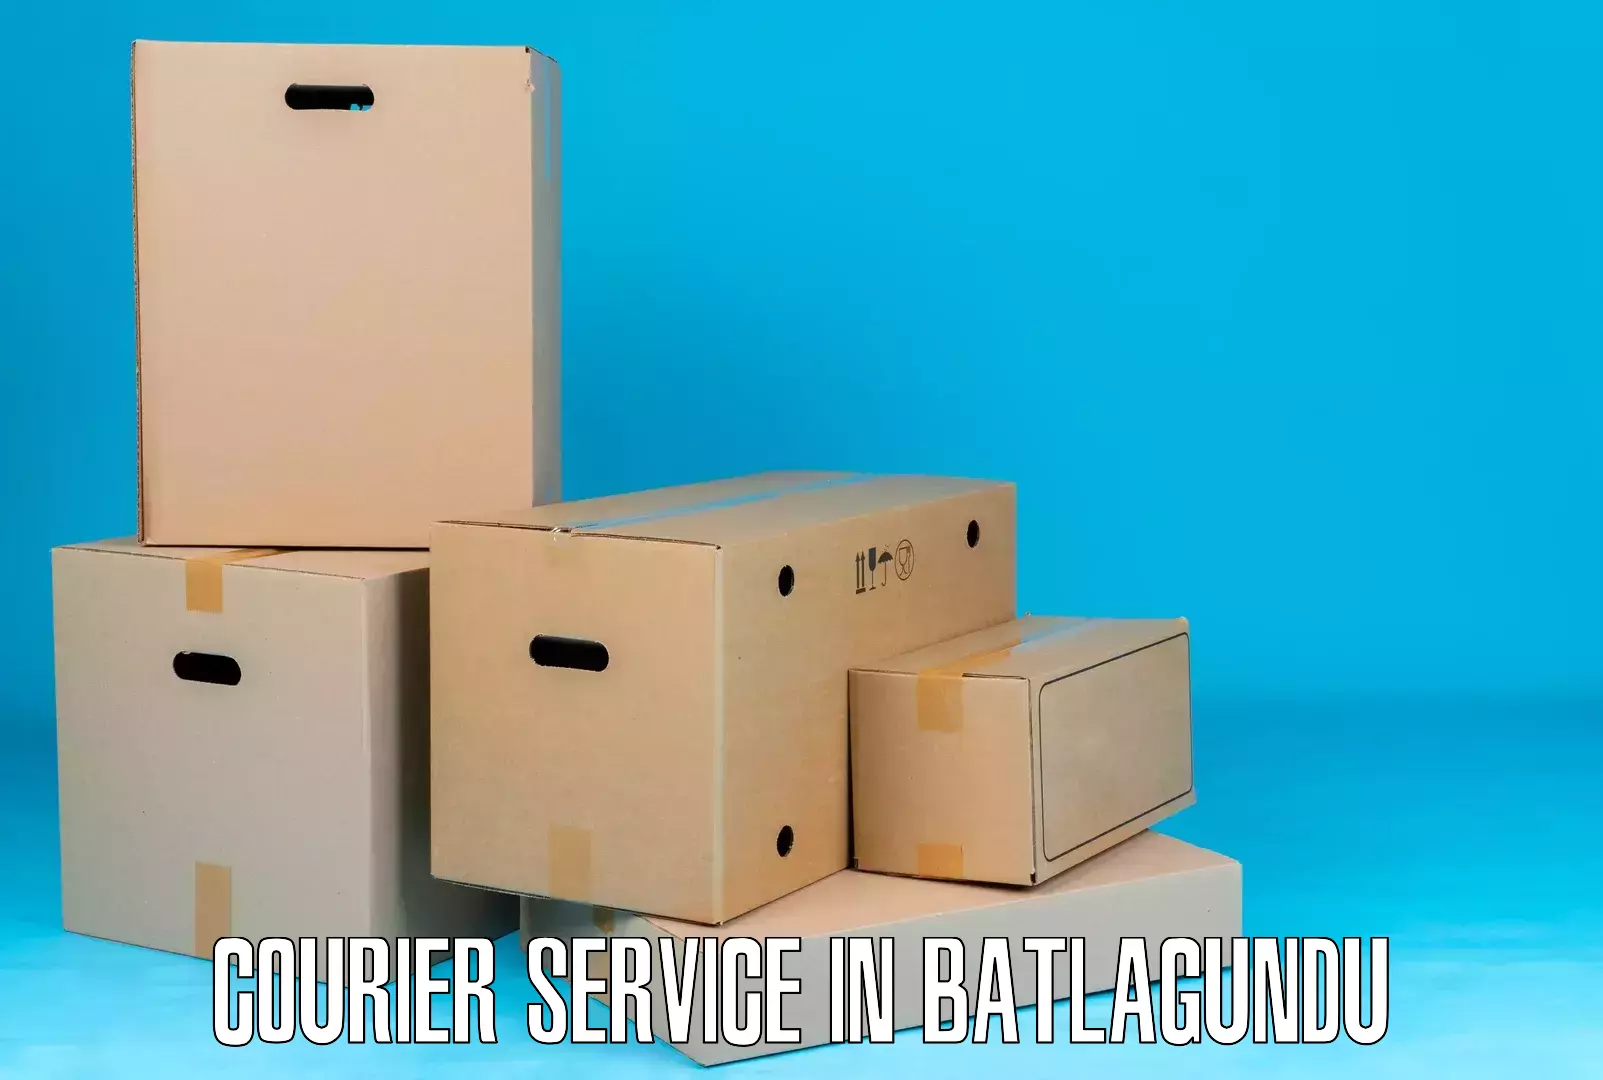 Flexible delivery schedules in Batlagundu